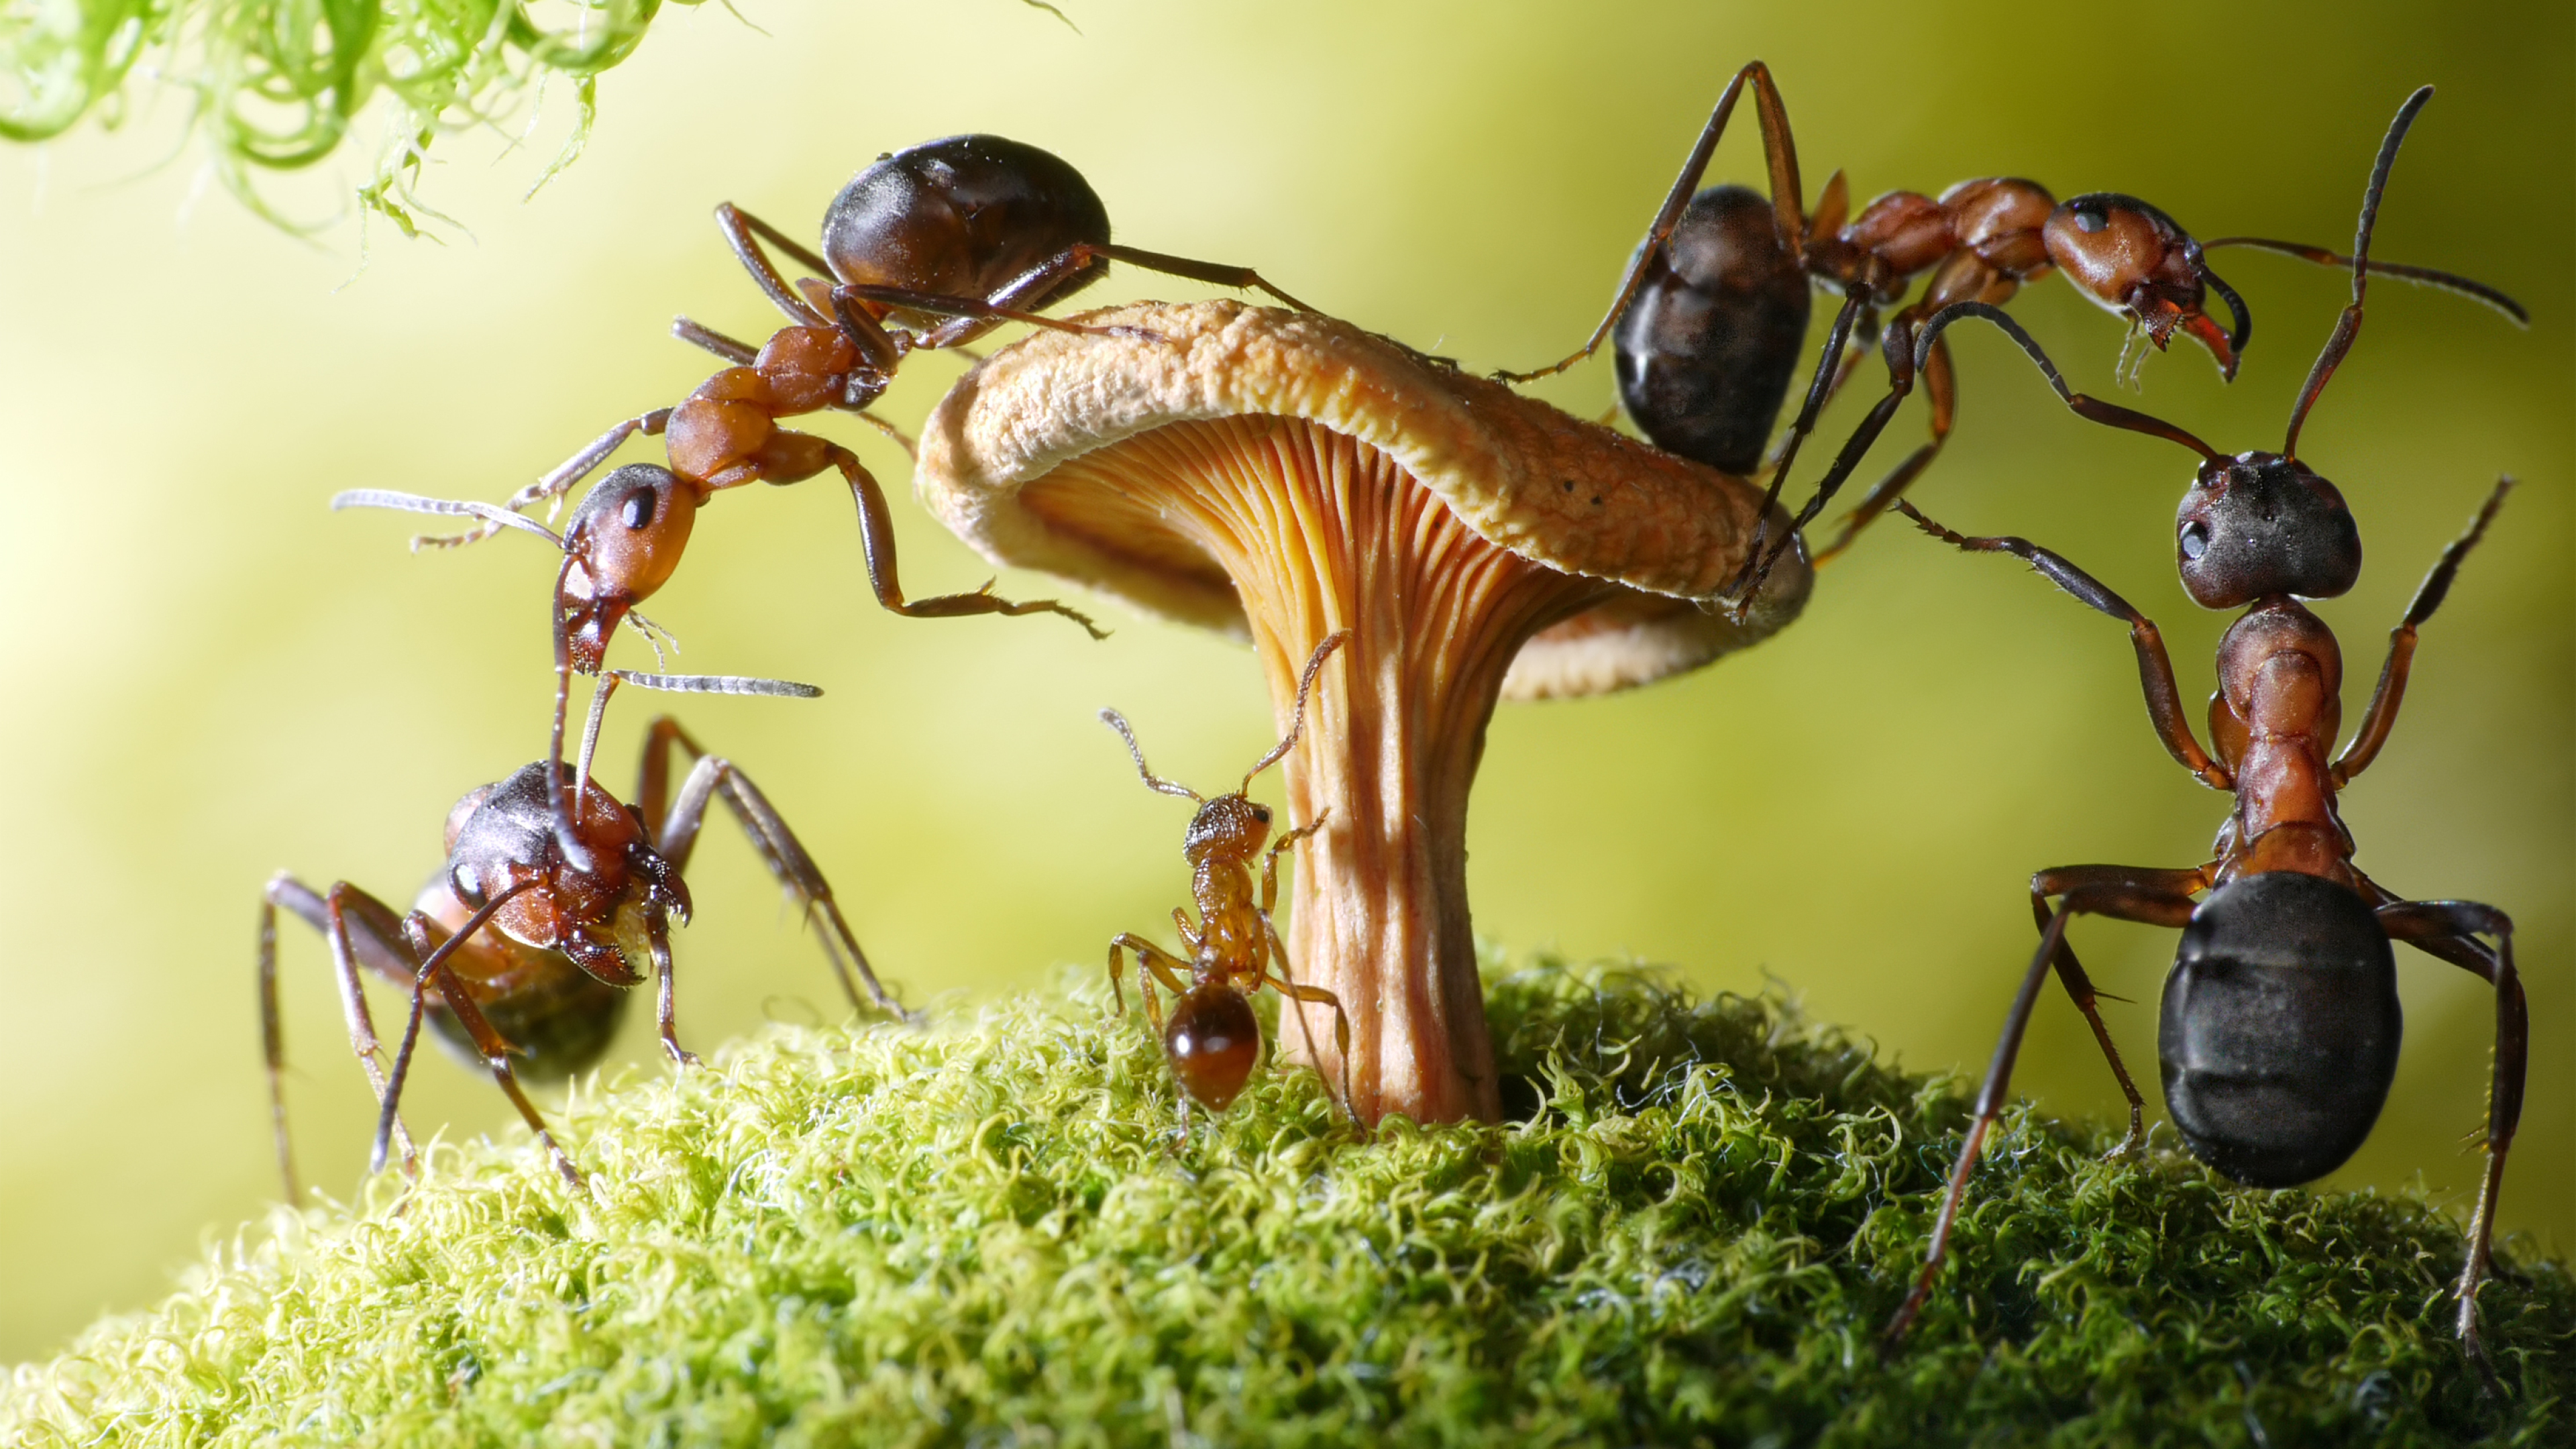 Муравей фото. Андрей Павлов фотограф муравьи. Бешеные муравьи Рэсберри. Муравьи листорезы выращивают грибы. Фараоновые муравьи Муравейник.